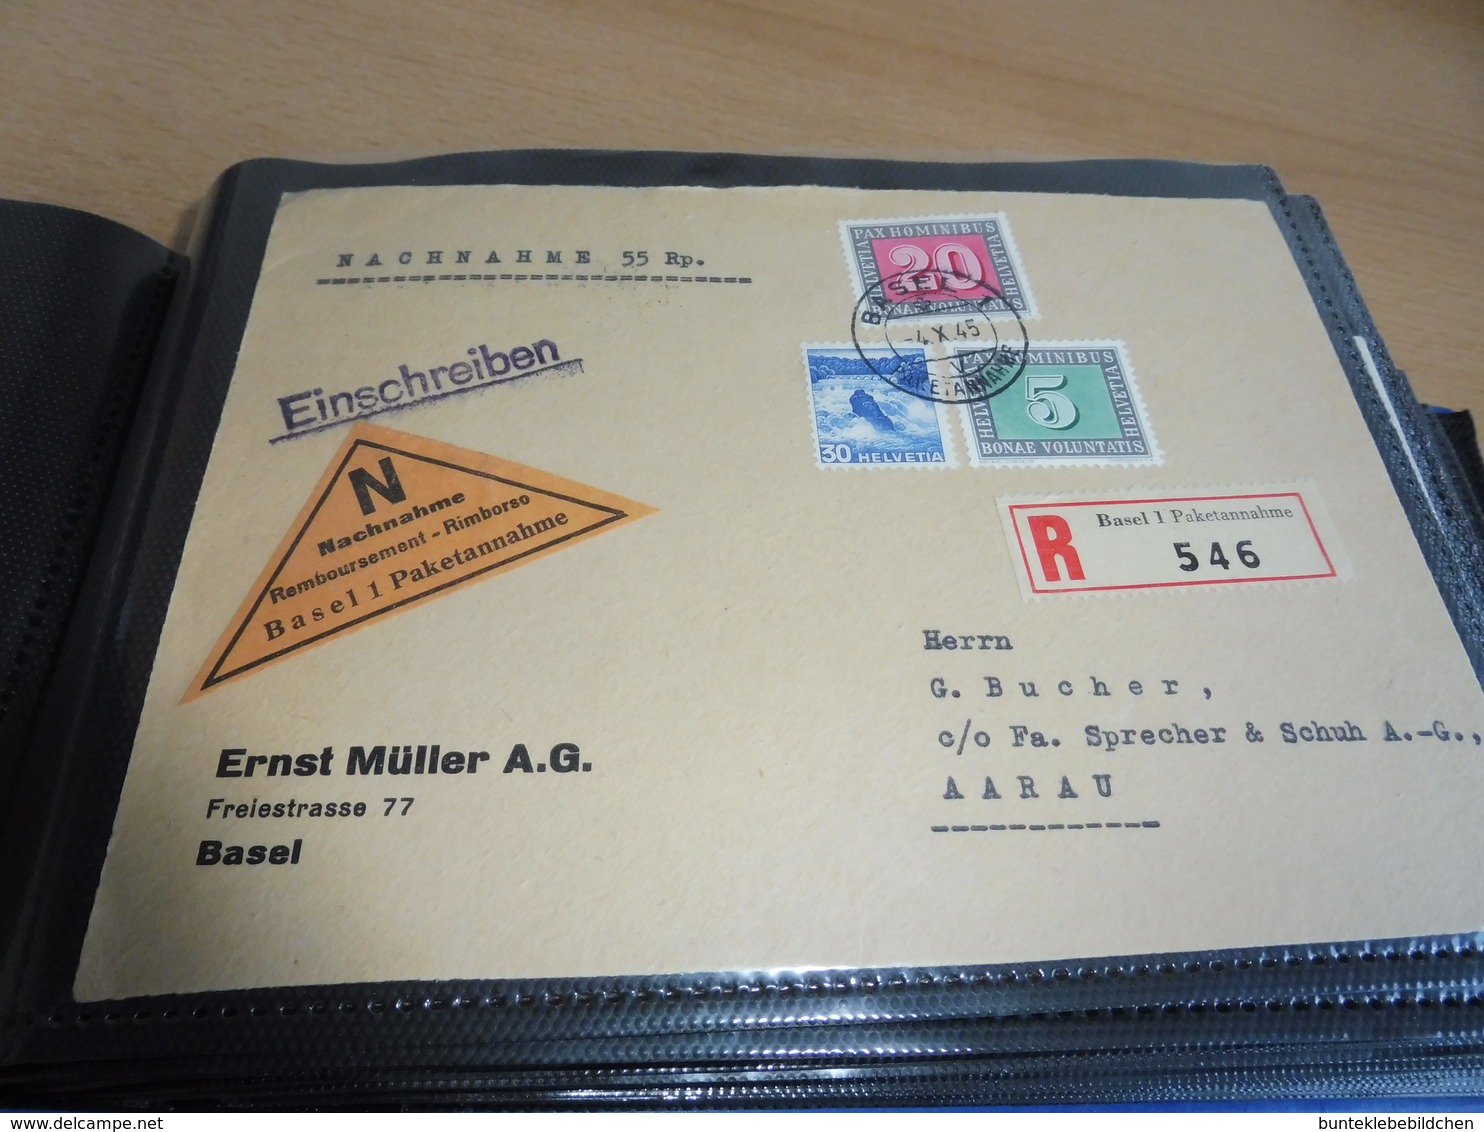 Schweiz Briefeposten mit z.B. nach Venezuela ......  Alles Abgebildet